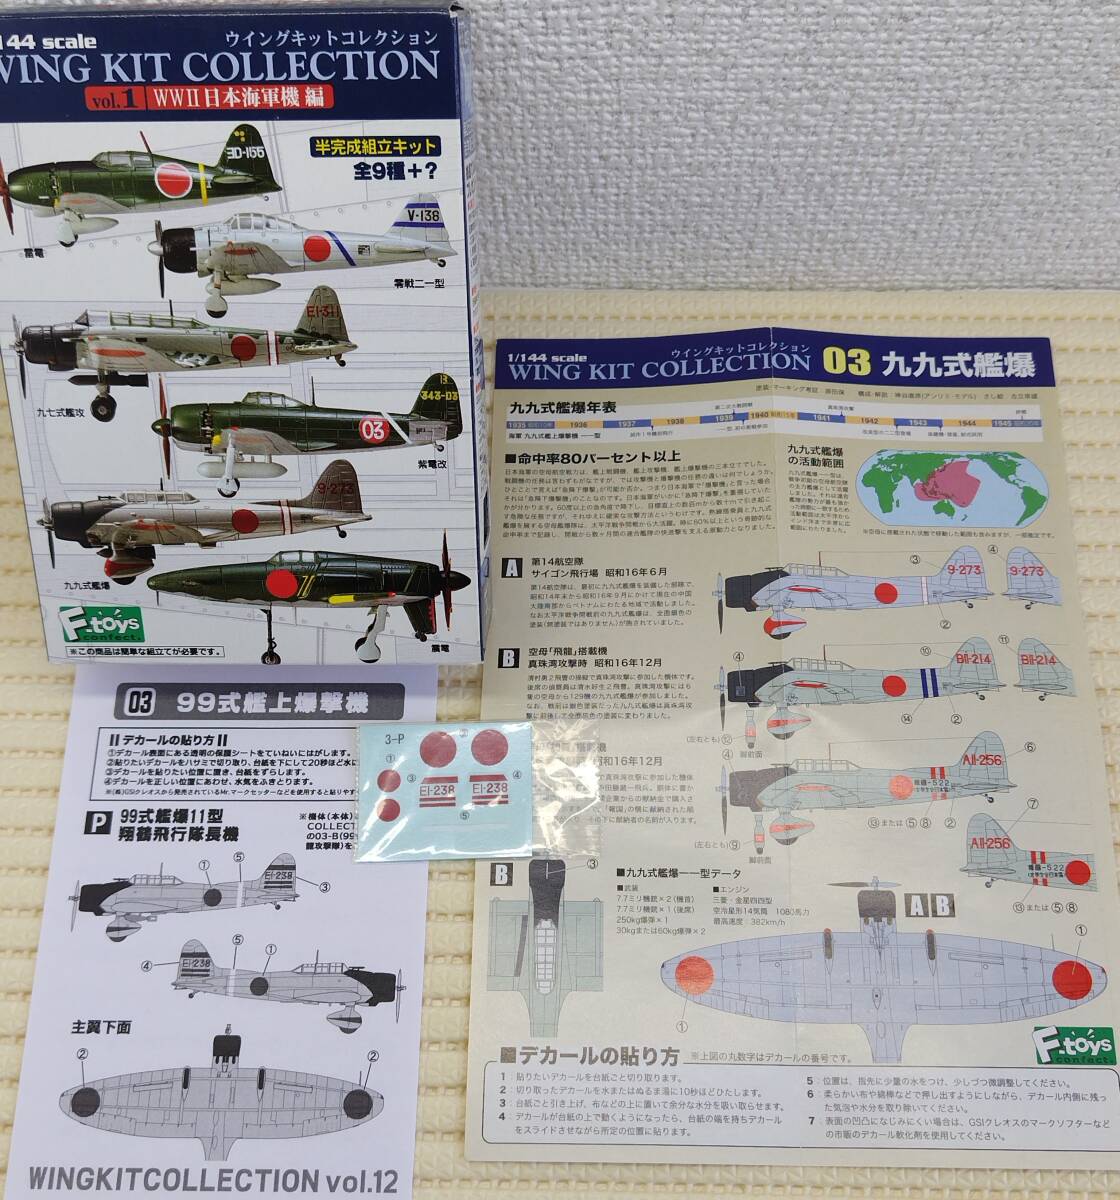 1/144 99式観上爆撃機 11型 空母加賀搭載 ウイングキットコレクションVol.1+Vol.12 空母翔鶴 飛行隊長機 応募当選デカールの画像1